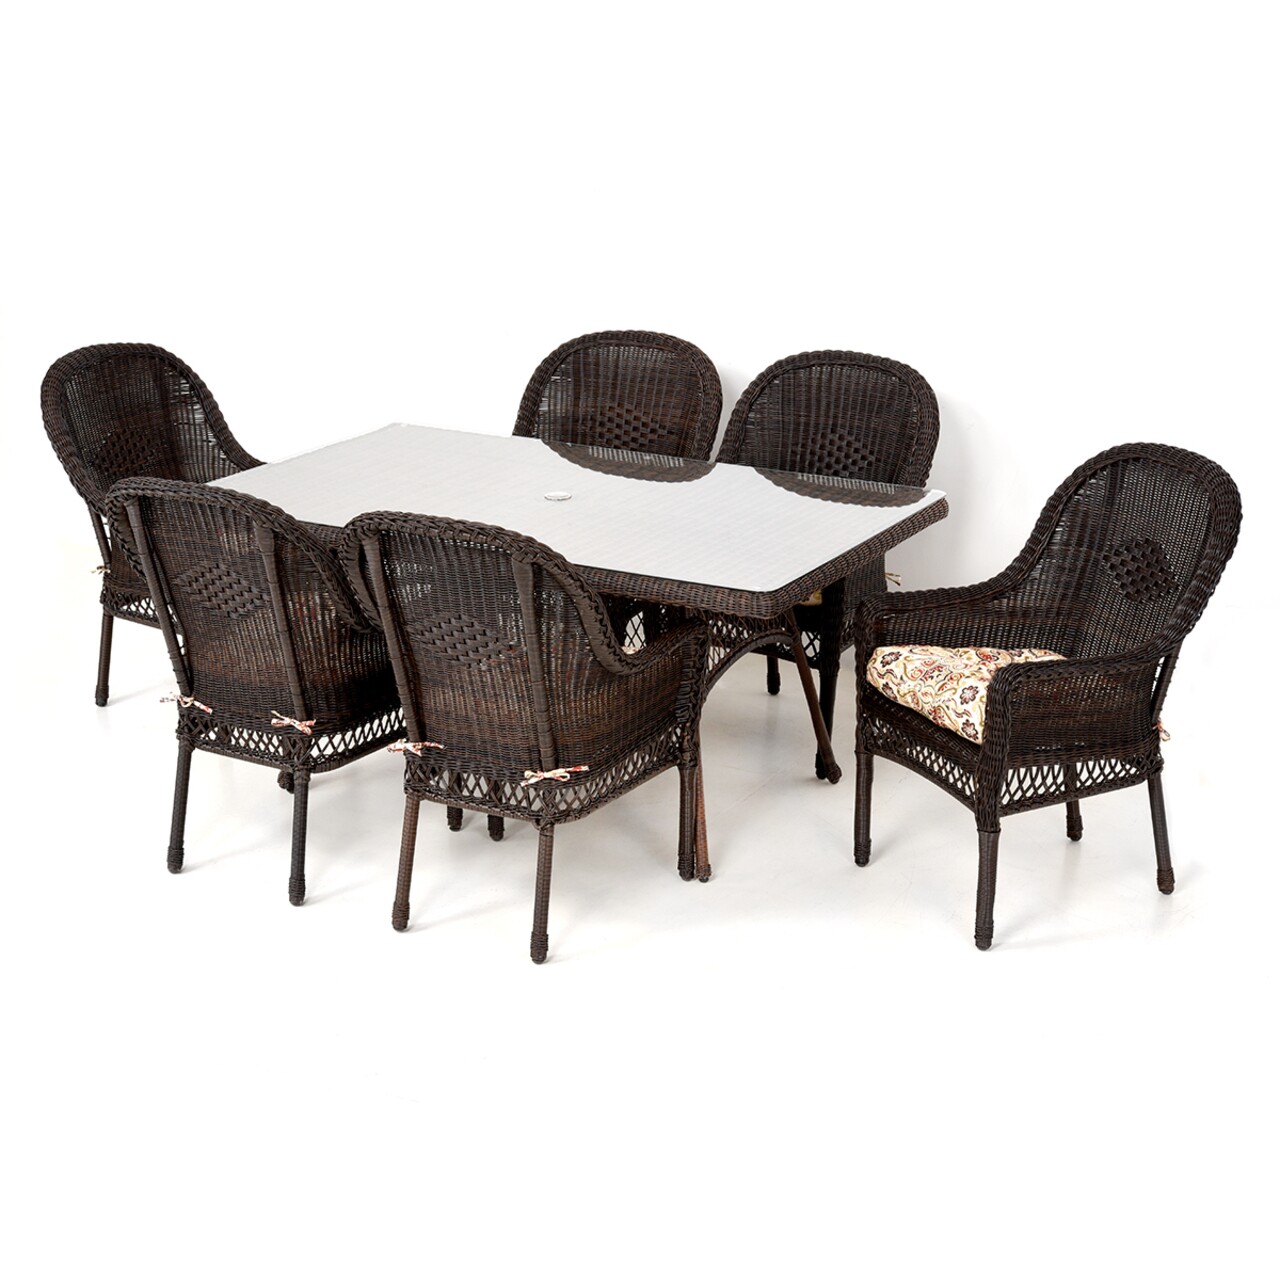 Maison susa 6 db szék és asztal, acél, barna/színes